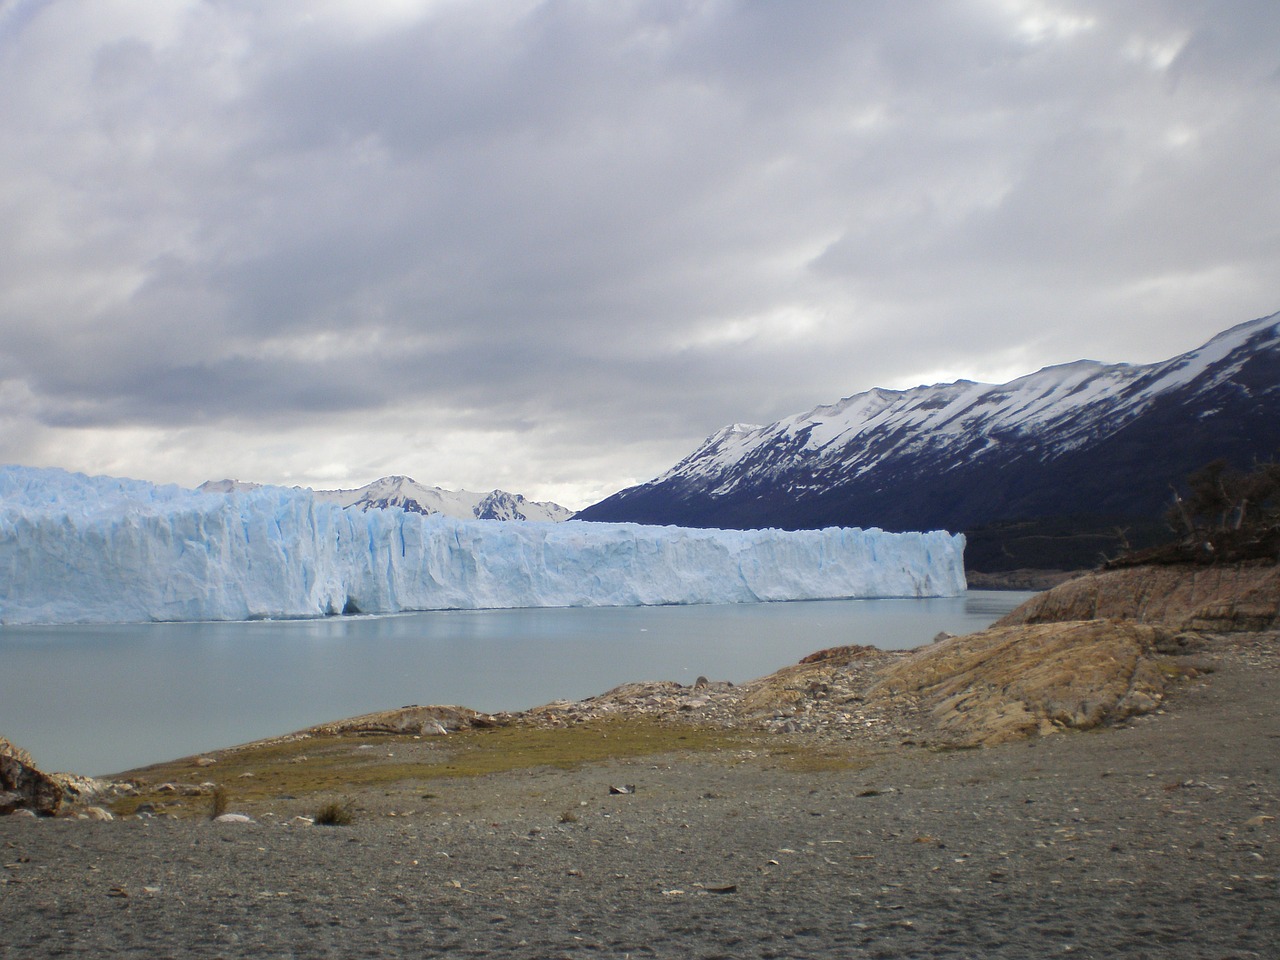 glacier argentina perito moreno free photo